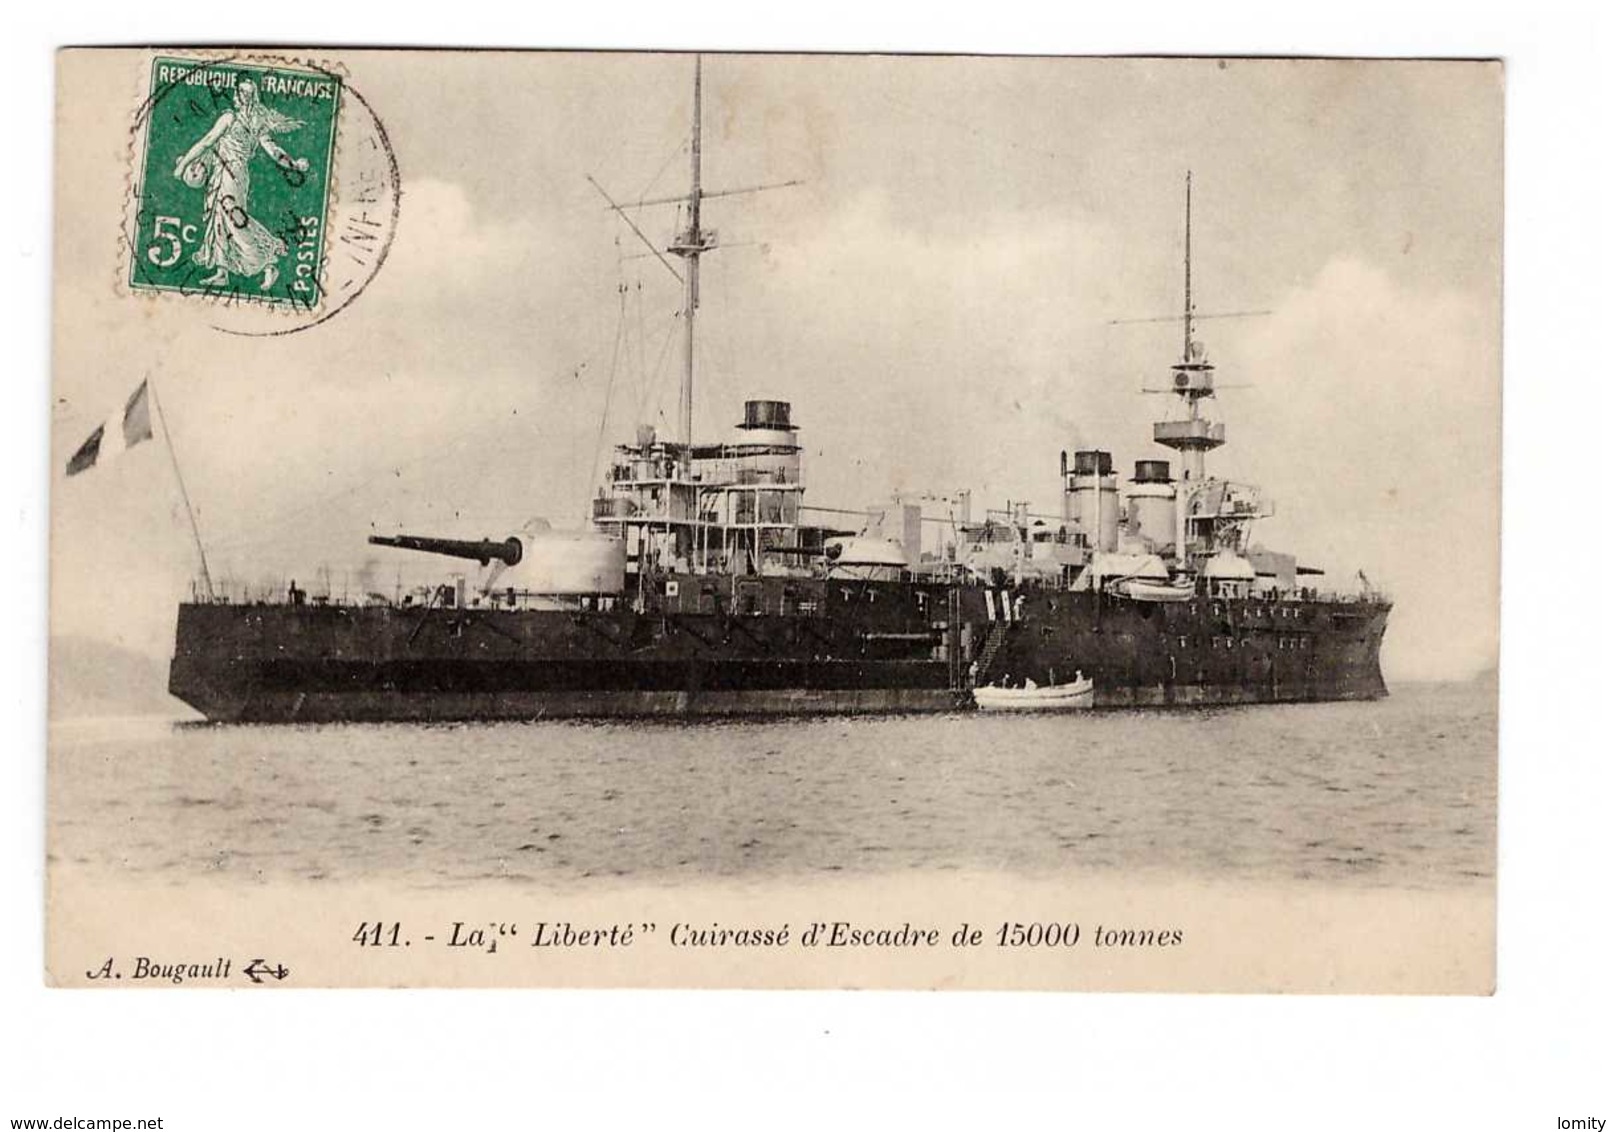 Bateau De Guerre Marine Militaire Française La Liberté Cuirassé D' Escadre De 15000 Tonnes Cachet 1909 - Guerre